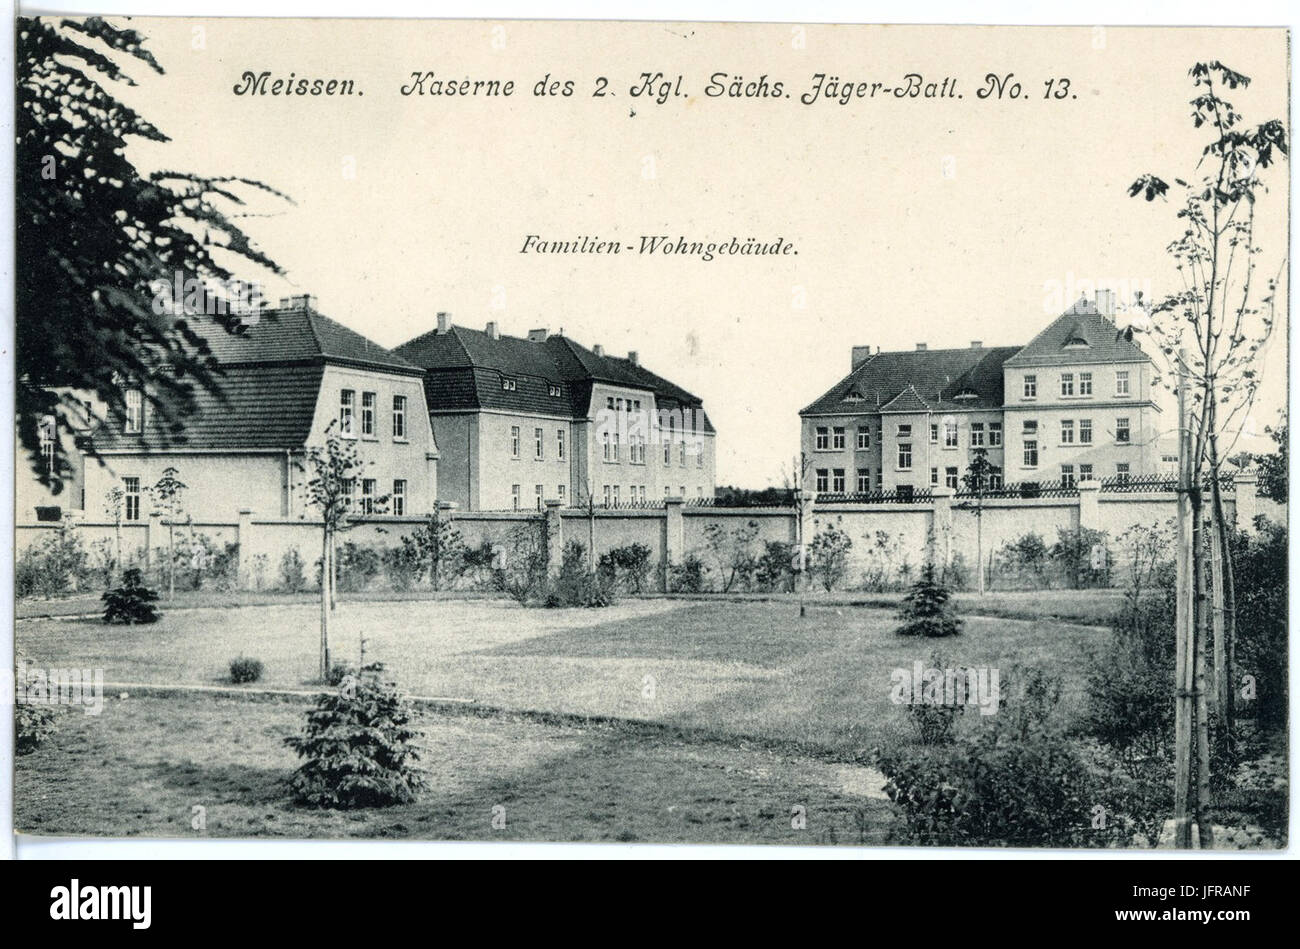 18177-Meißen-1914-Kaserne des 2. Königlich Sächsischen Jäger-Bataillon Nr. 13-Brück & Sohn Kunstverlag Stock Photo